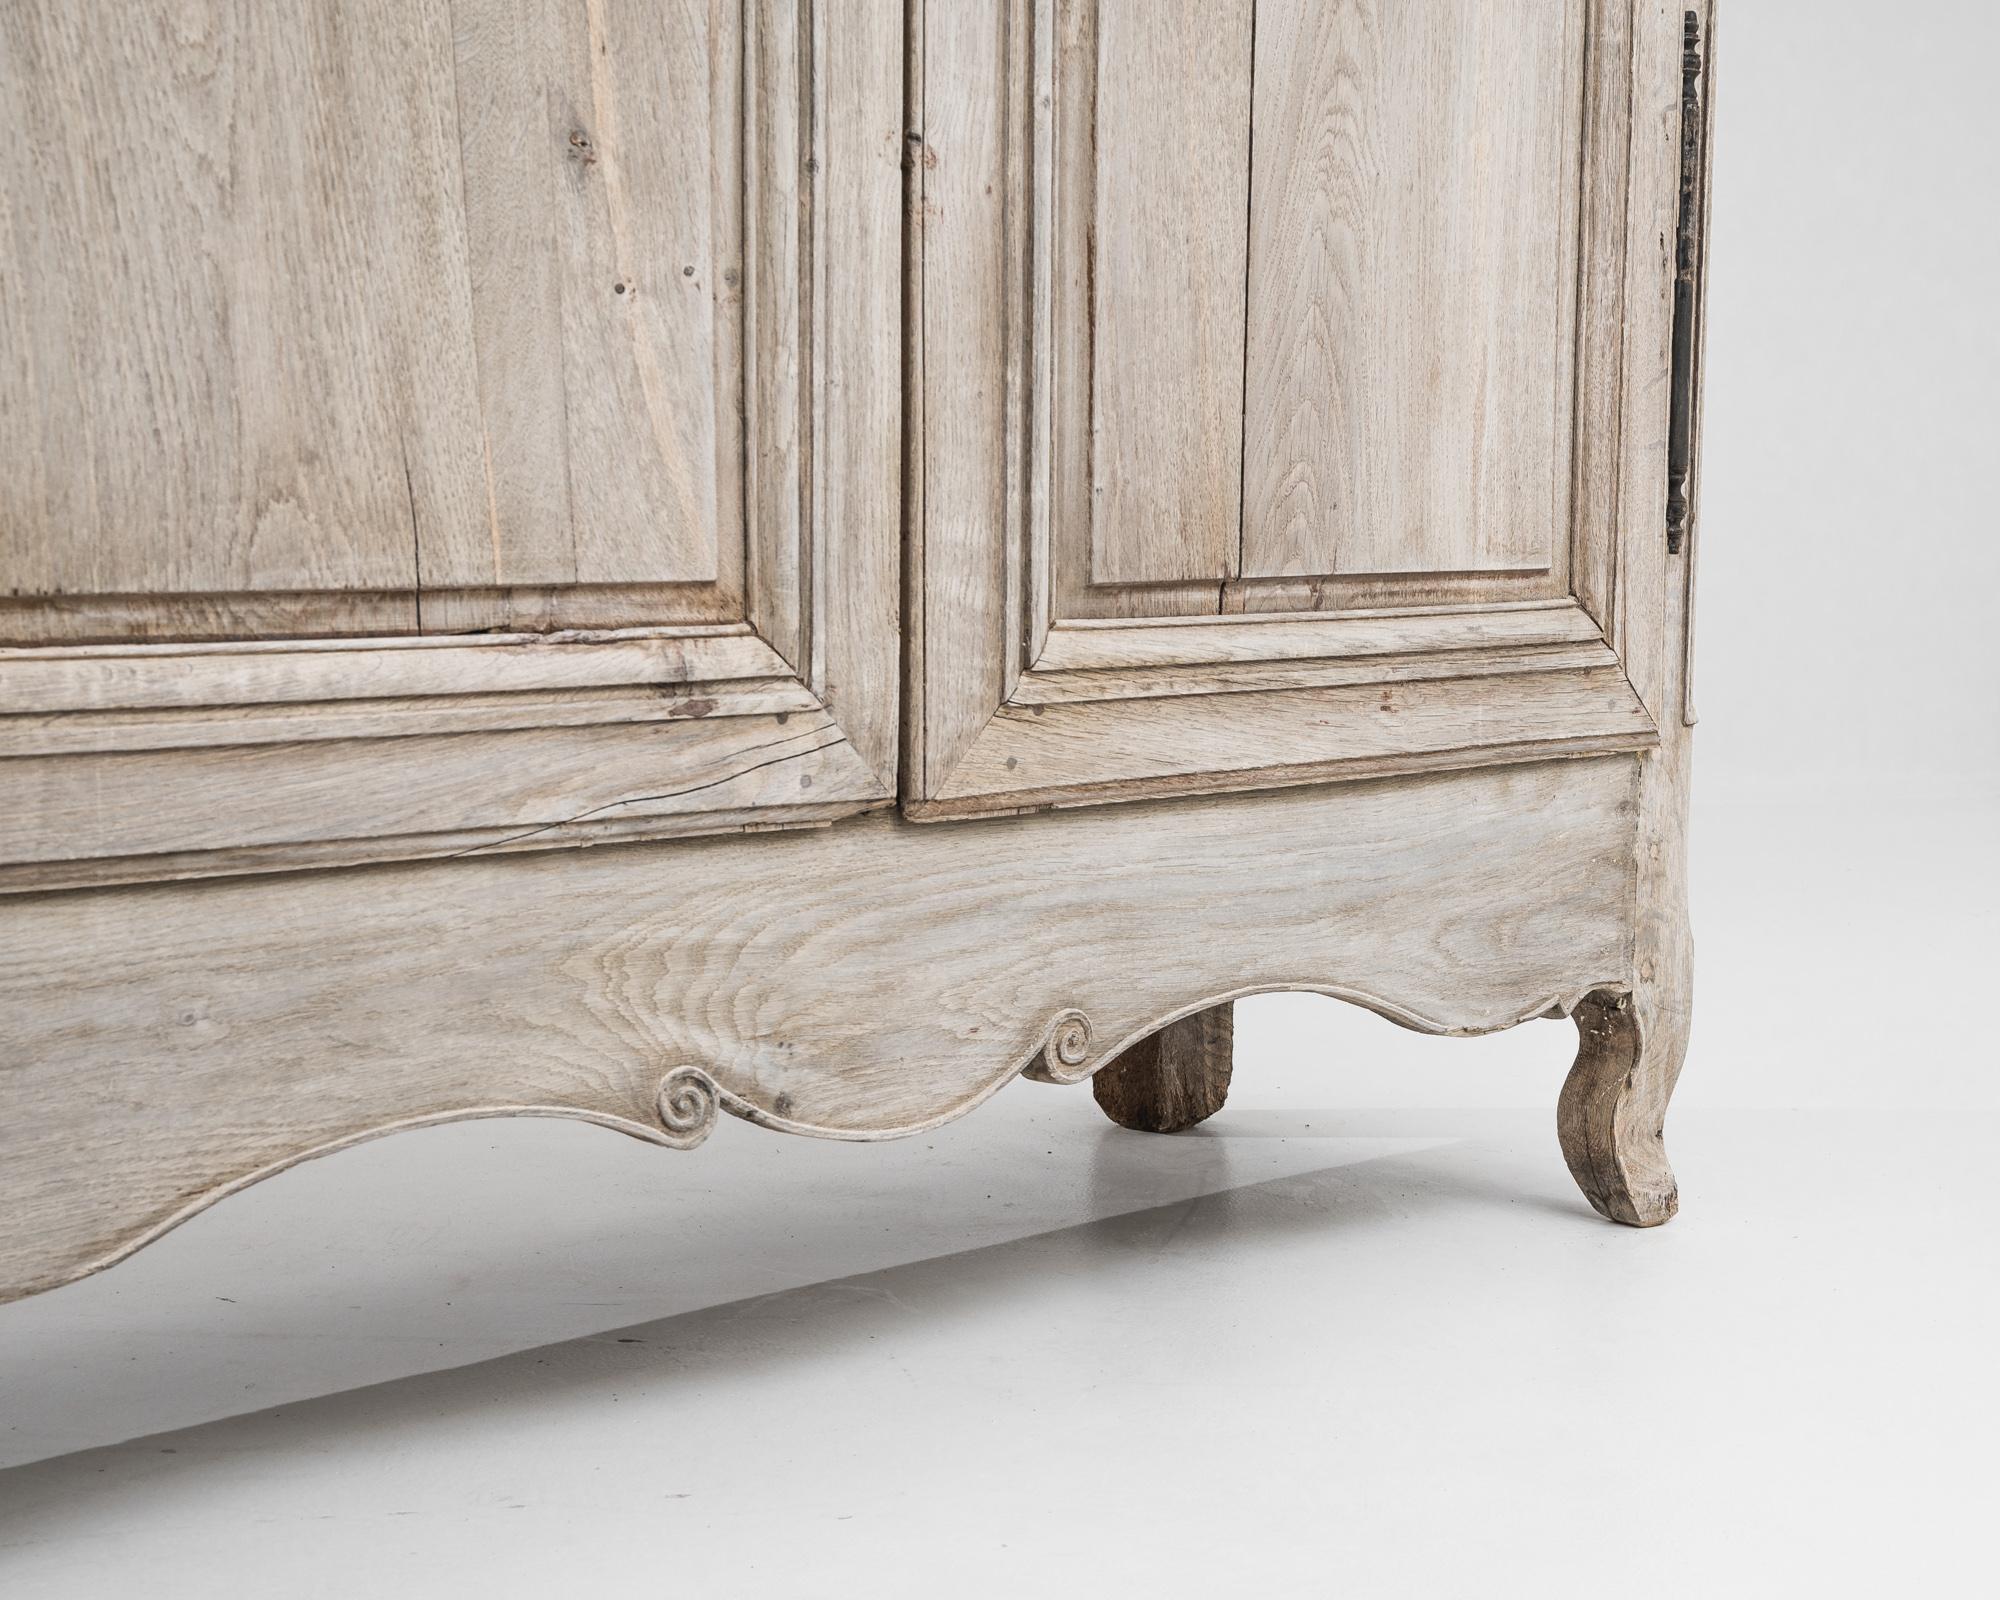 Créée au début du XIXe siècle, cette armoire française en bois est d'une taille impressionnante et allie un charme antique à un savoir-faire inégalé. Soumise à un délicat processus de blanchiment, la surface du chêne est rajeunie, ce qui accentue sa